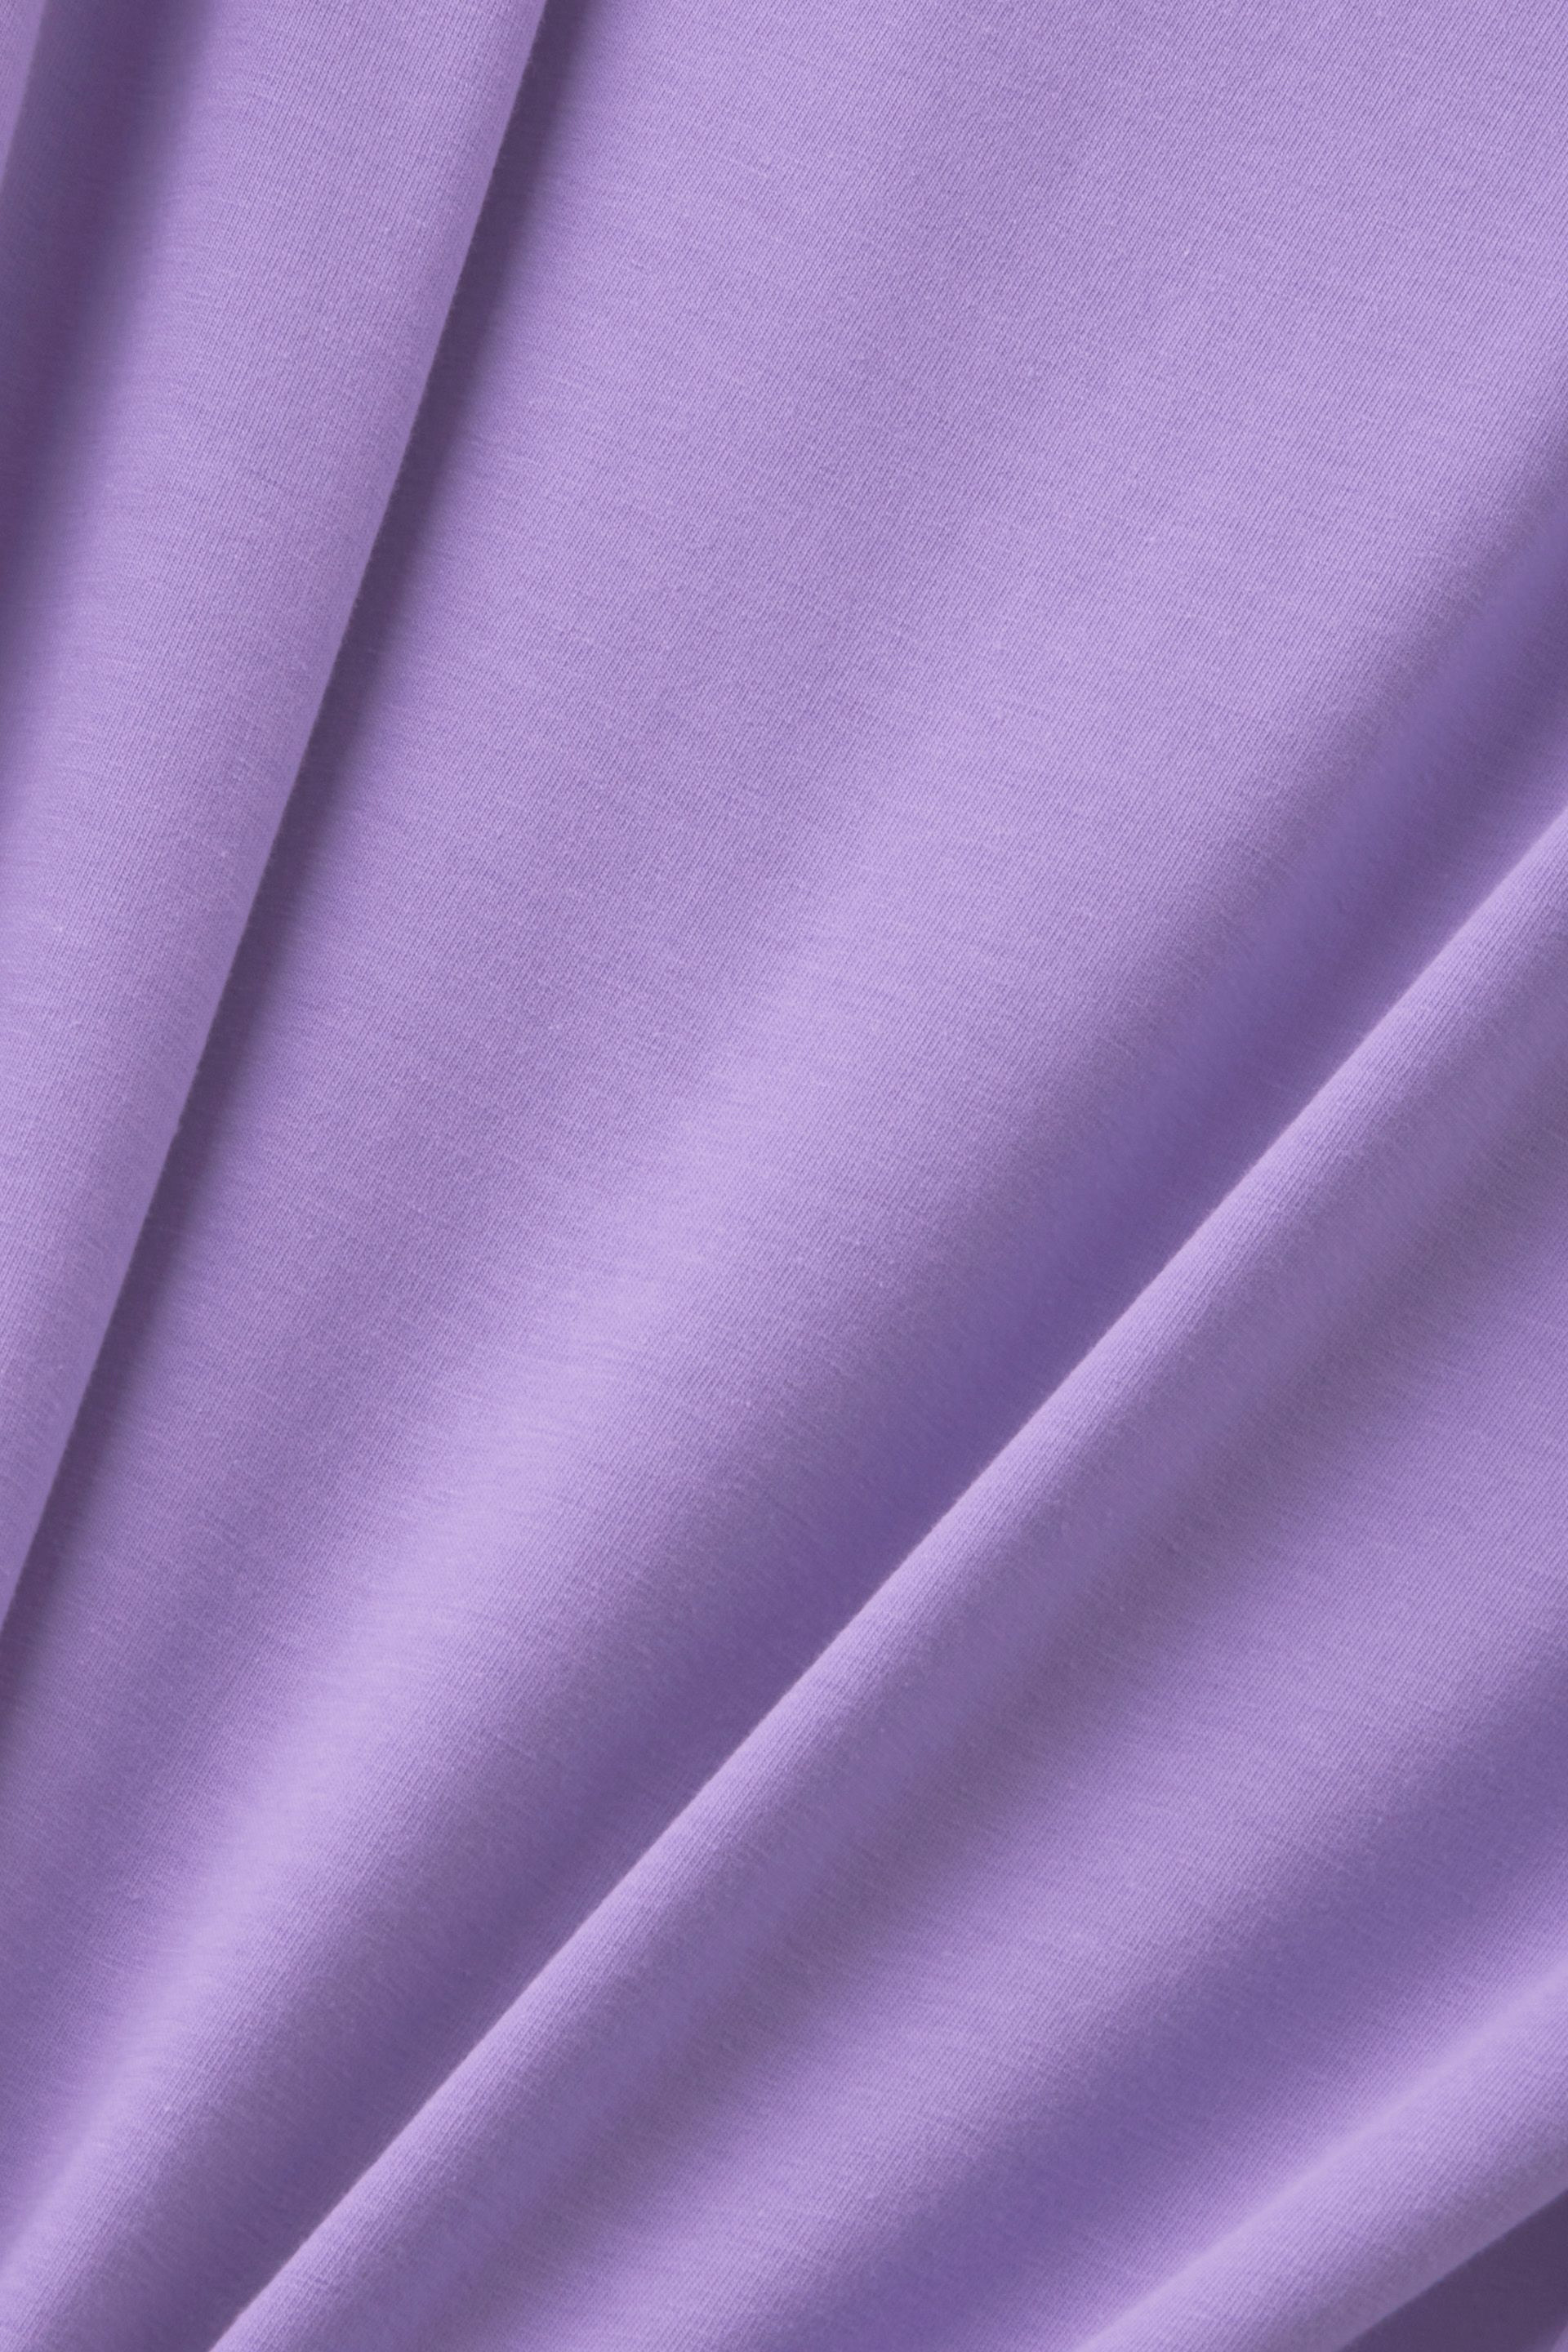 Esprit - Stretch cotton T-shirt, Purple Lilac, large image number 1